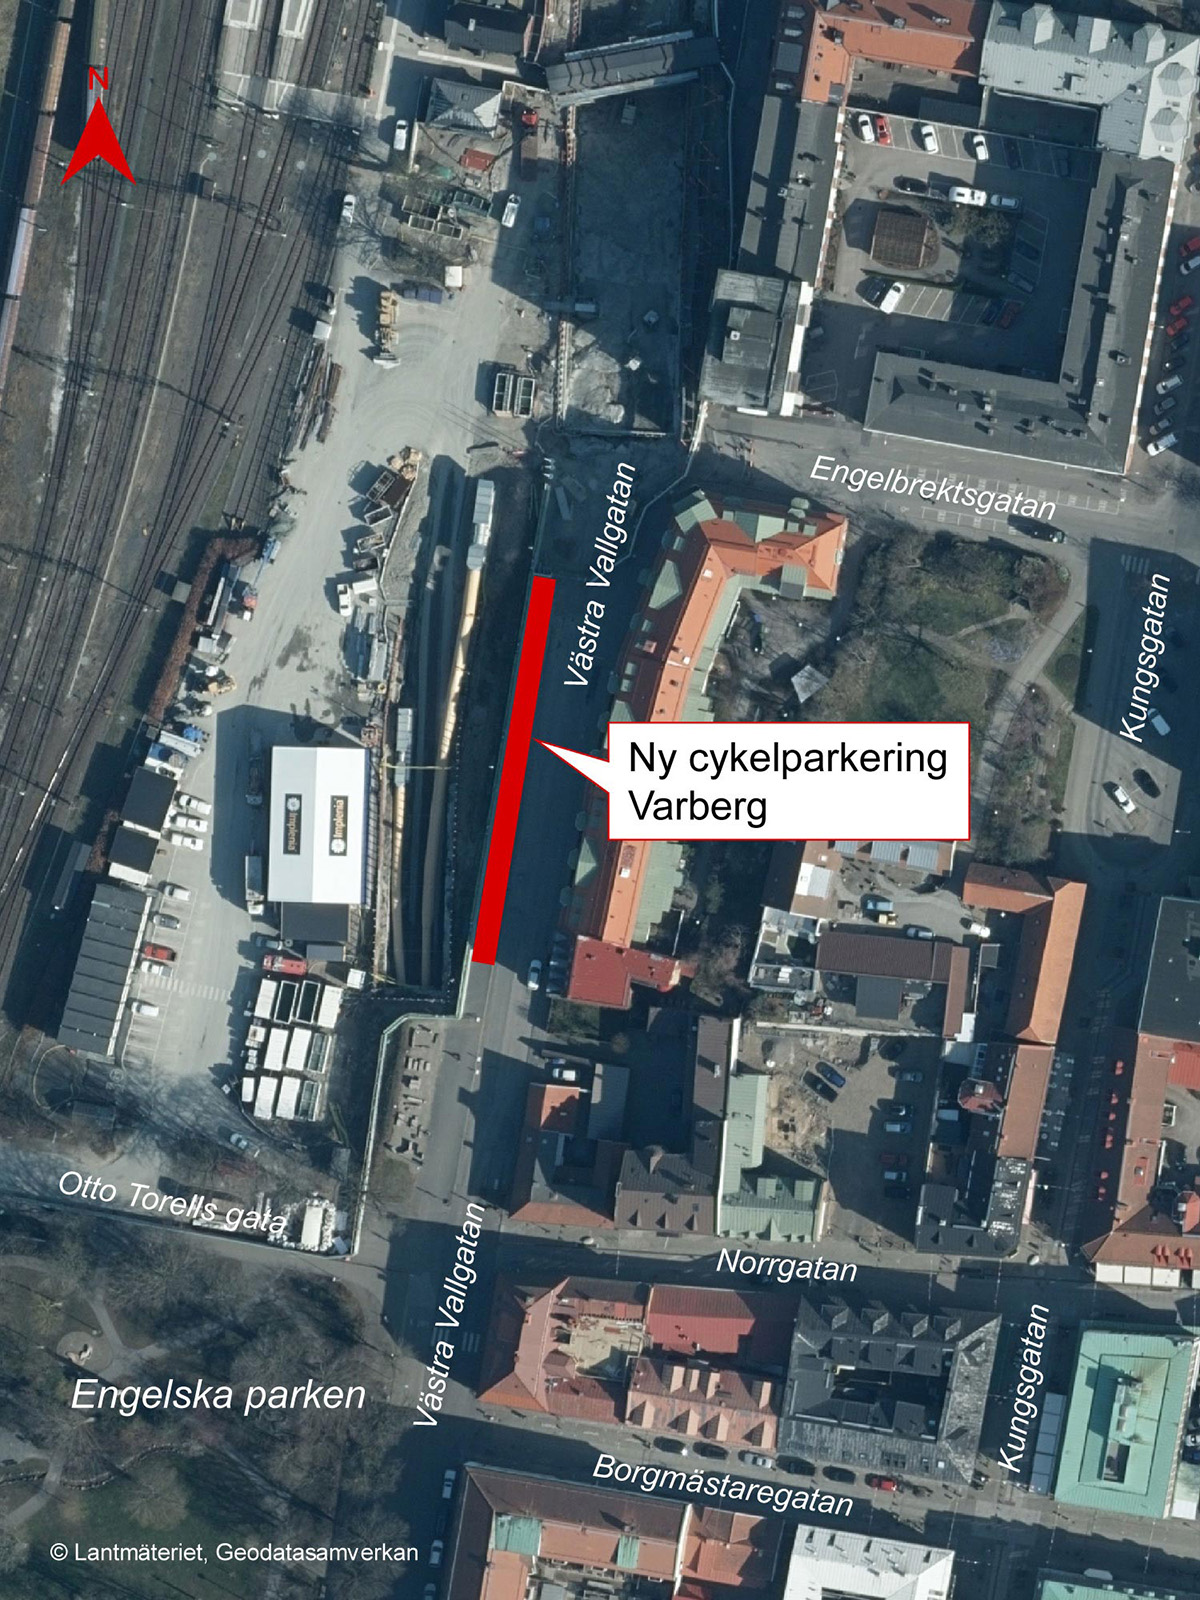 Karta som visar den nya cykelparkeringen på Västra Vallgatan, söder om Engelbrektsgatan. Källa: Trafikverket